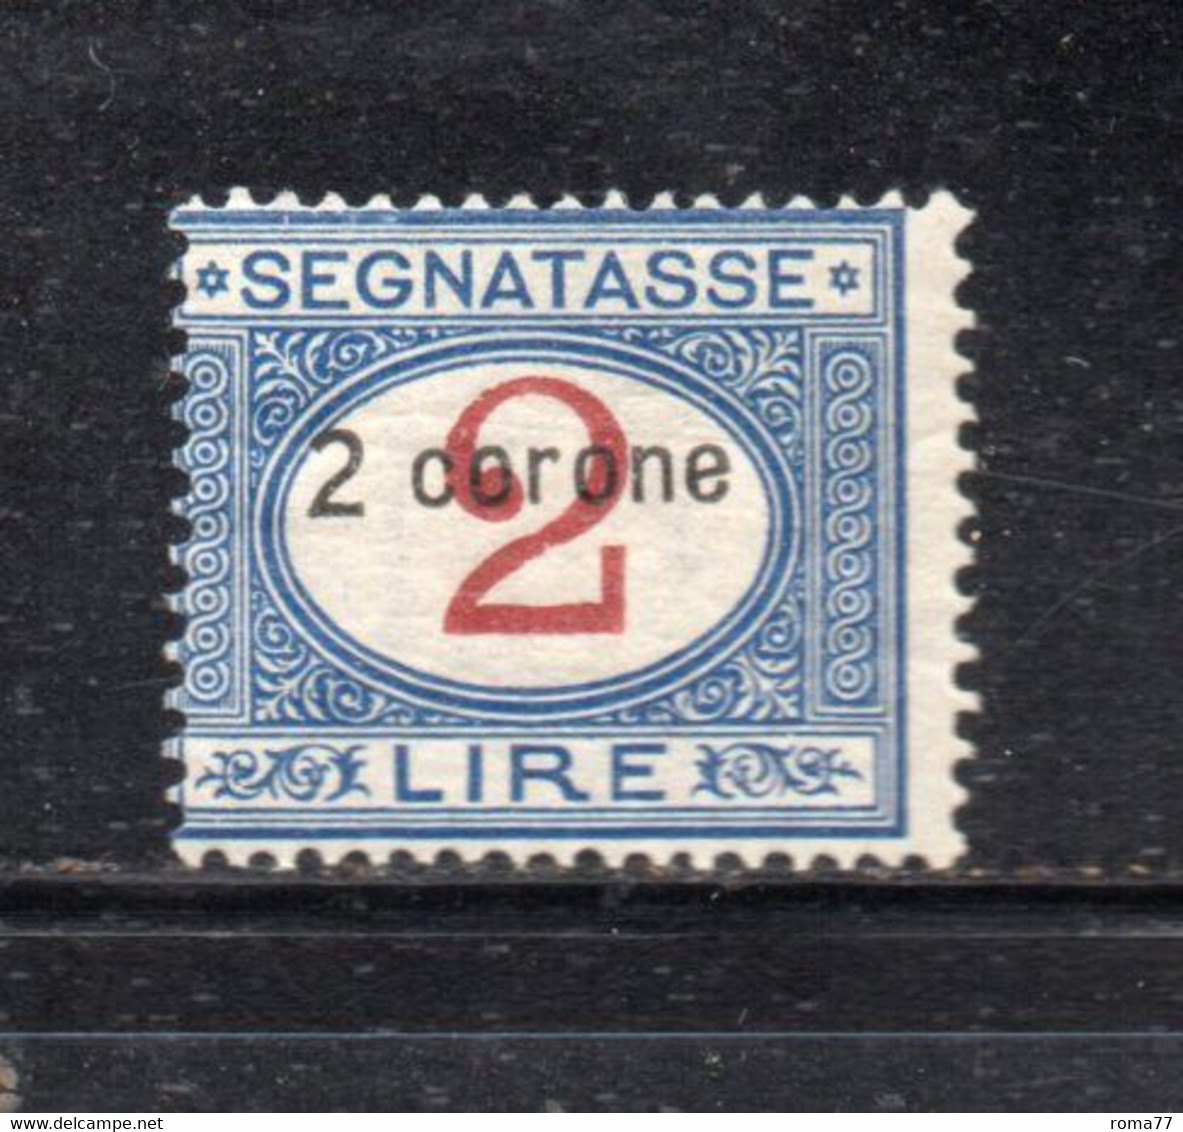 Y2365 - DALMAZIA 1922, Segnatasse Il N. 3  Con Gomma Integra  ***  MNH - Dalmatia